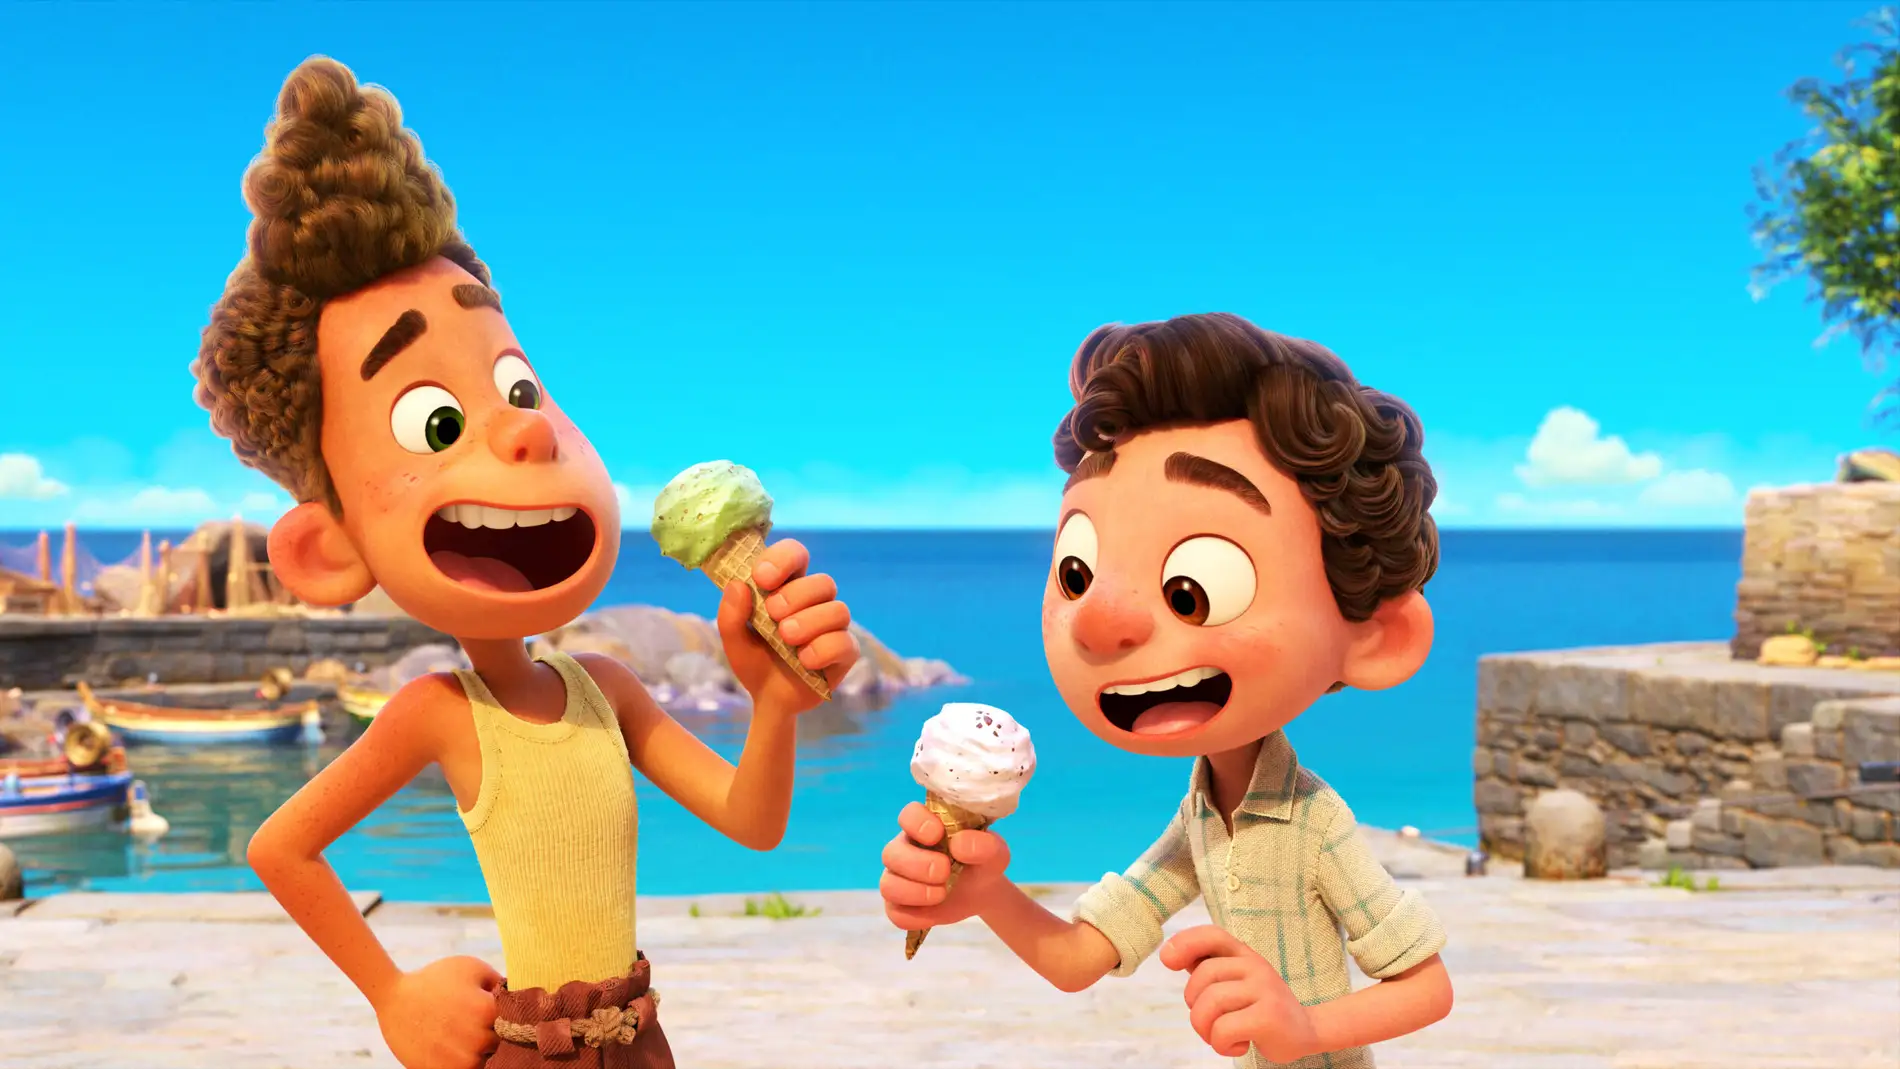 Imagen promocional de la película 'Luca', que Disney y Pixar estrenan en Disney+